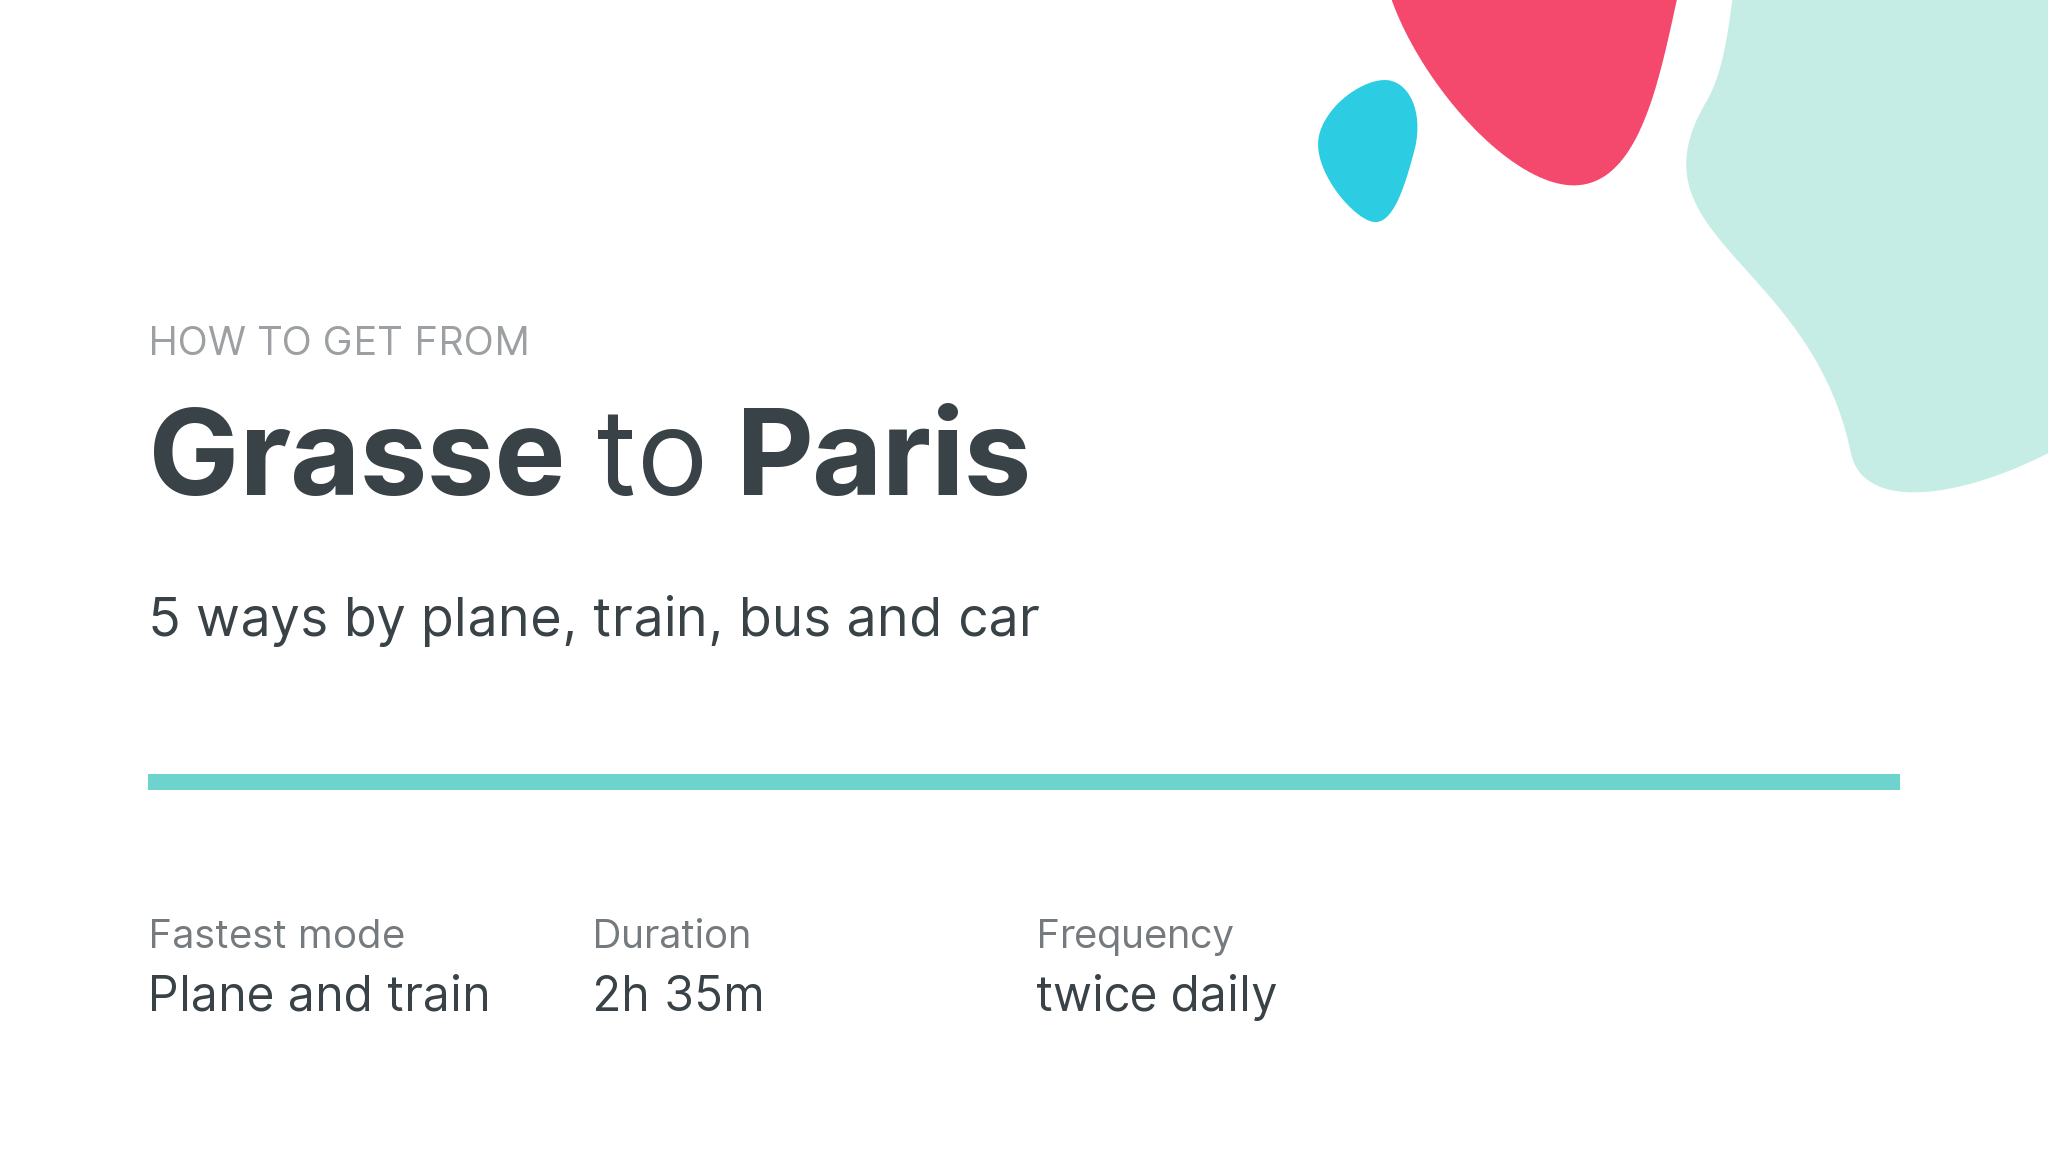 How do I get from Grasse to Paris